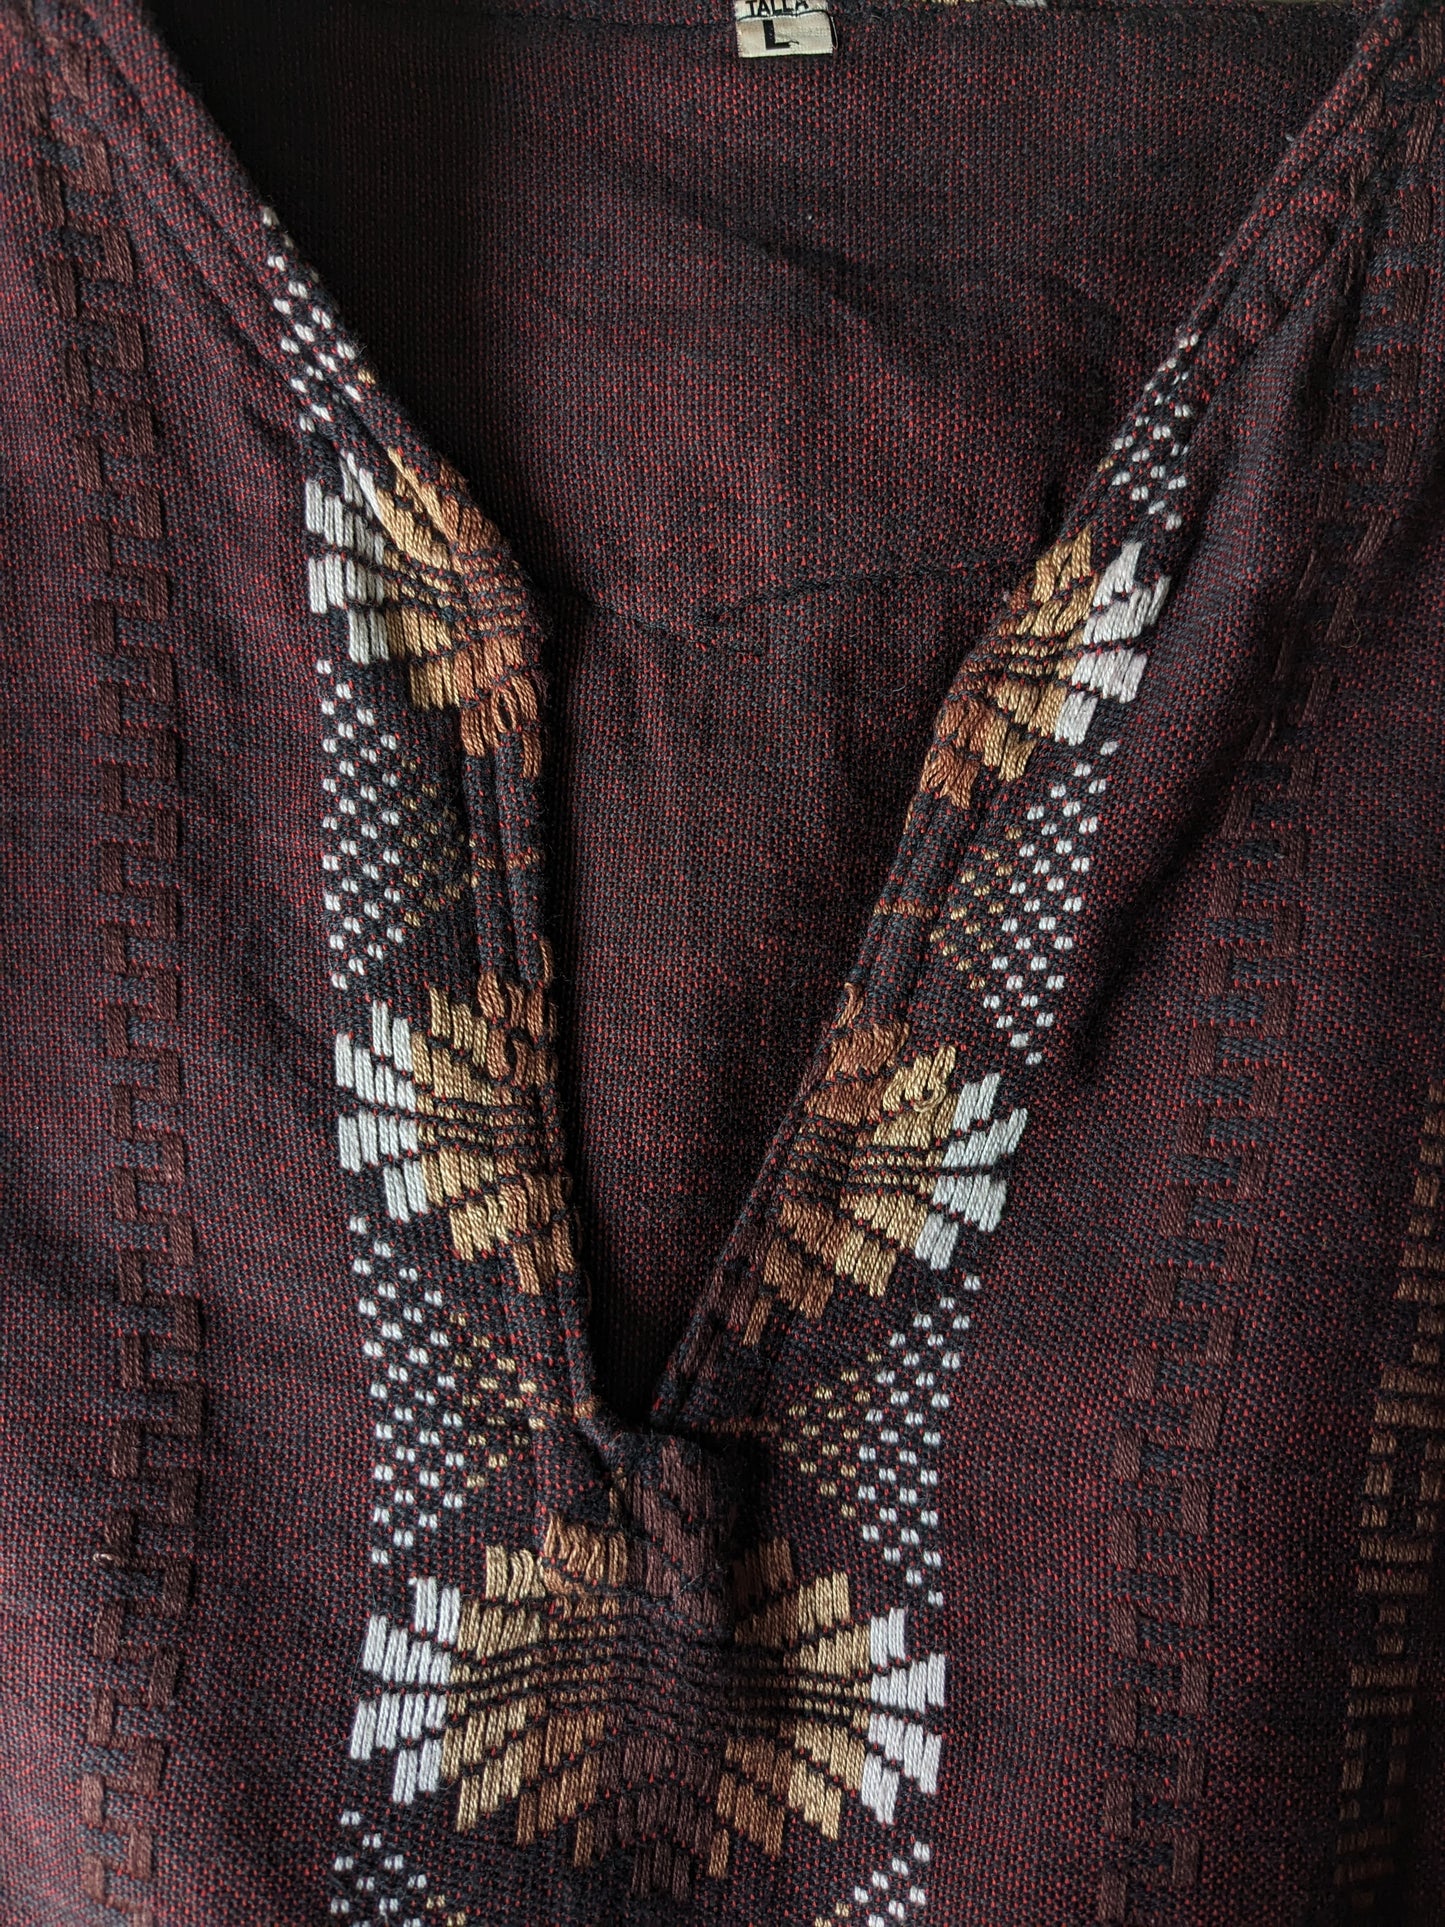 Chemise vintage avec col en V. Black rouge mélangé, avec un motif blanc brun. Taille L.